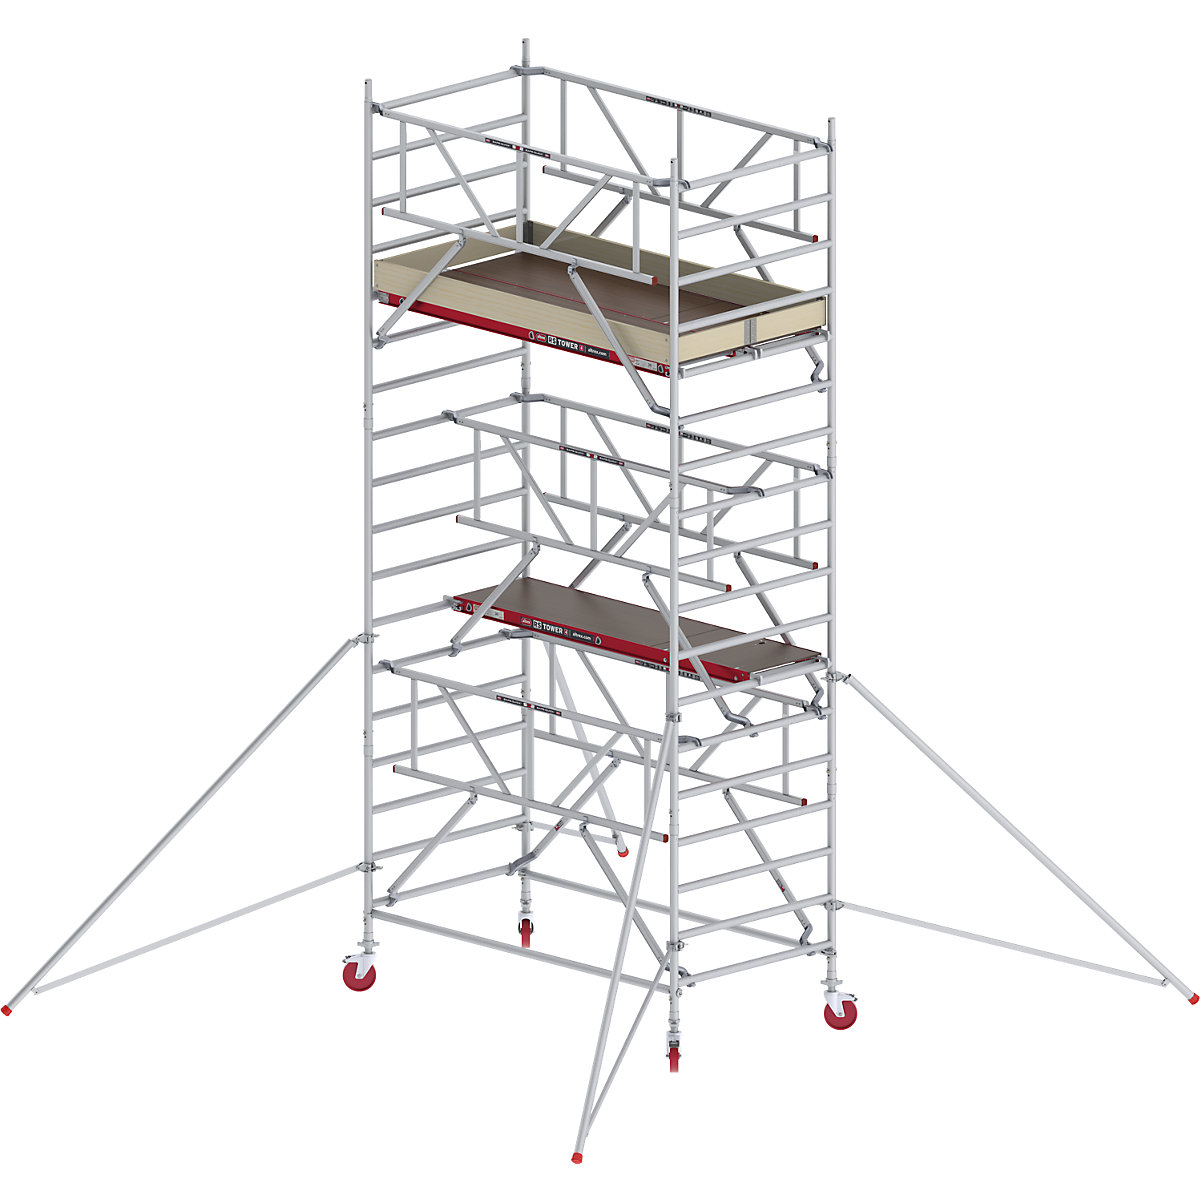 Trabattello mobile RS TOWER 42 largo con Safe-Quick® – Altrex, piattaforma in legno, lunghezza 1,85 m, altezza di lavoro 6,20 m-5